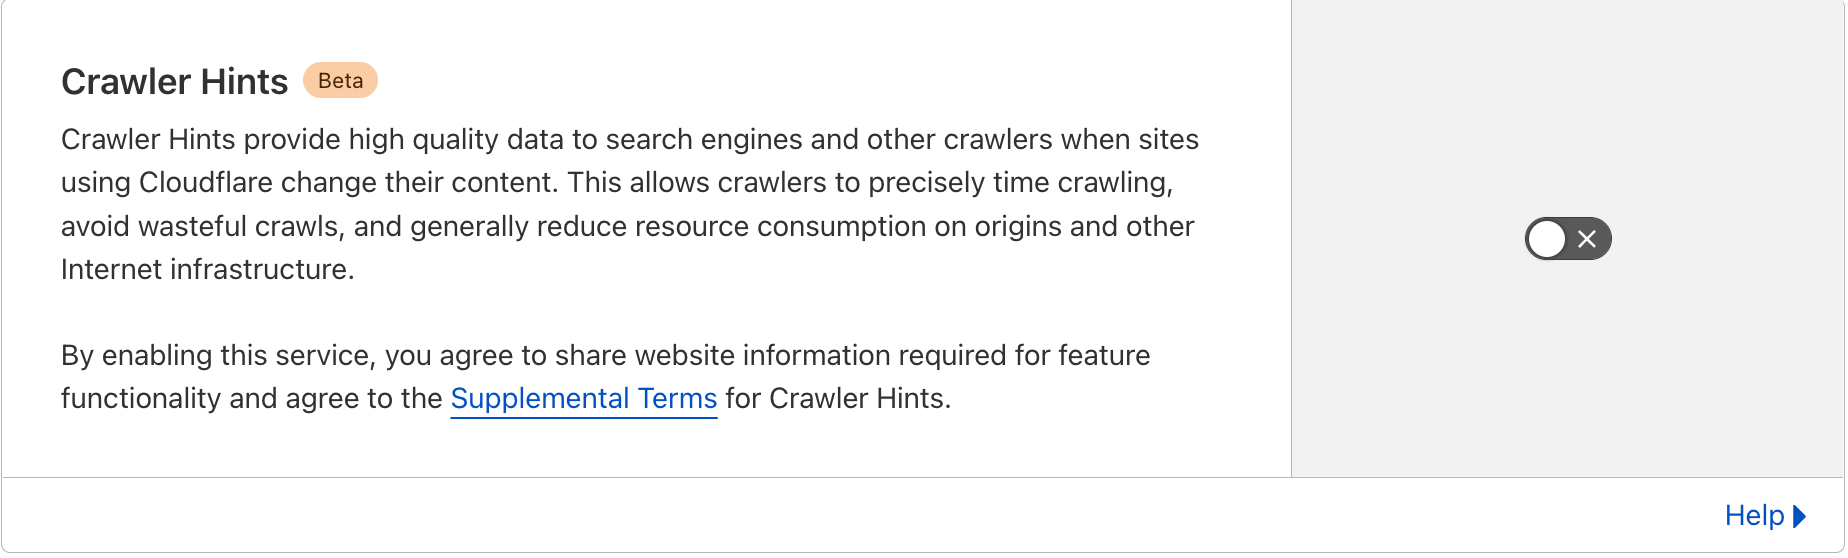 Crawler Hints поддерживает Microsoft IndexNow, помогая пользователям находить новый контент.